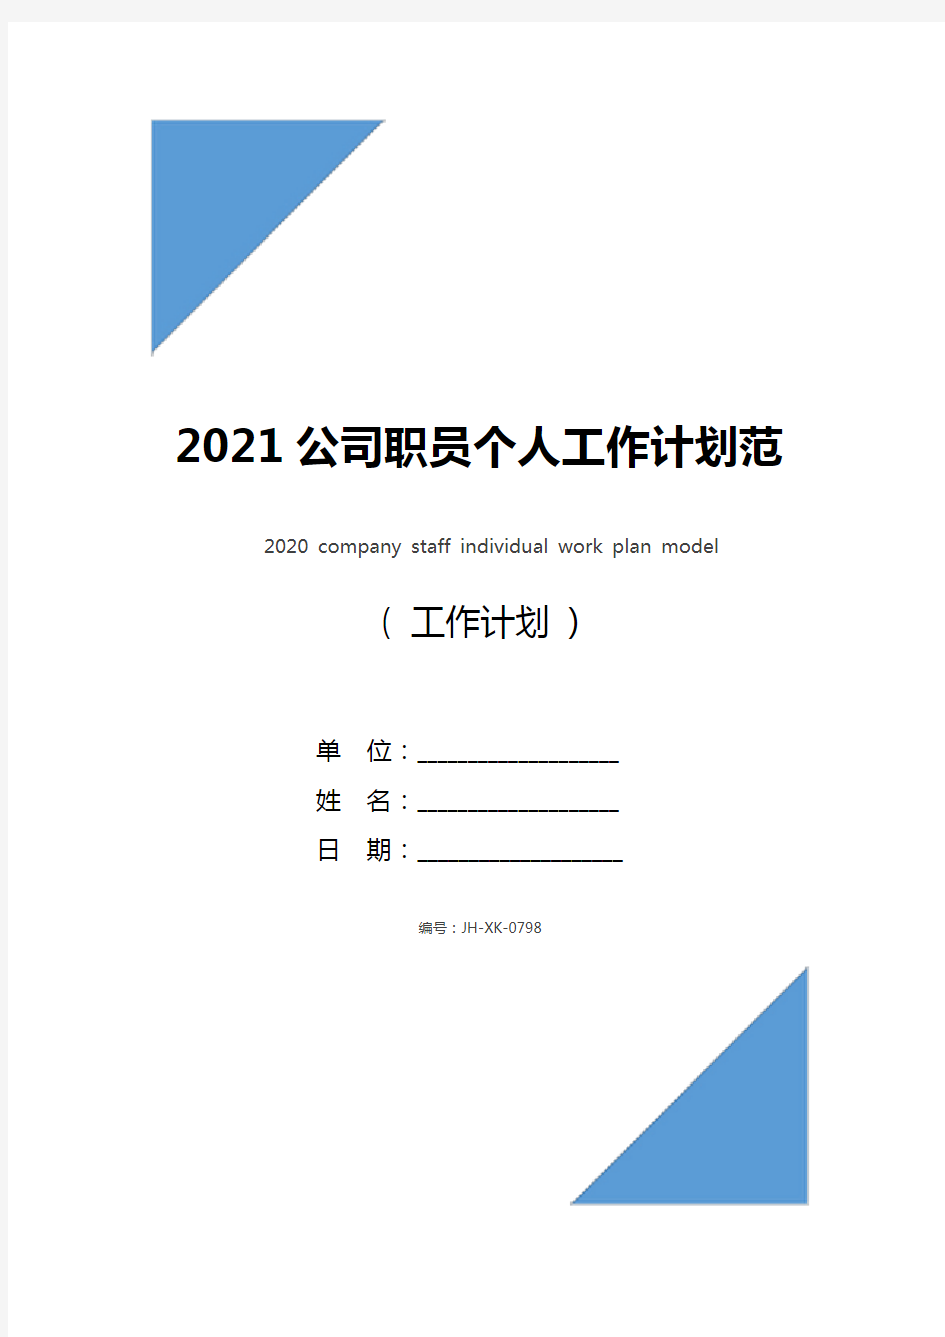 2021公司职员个人工作计划范本(通用版)